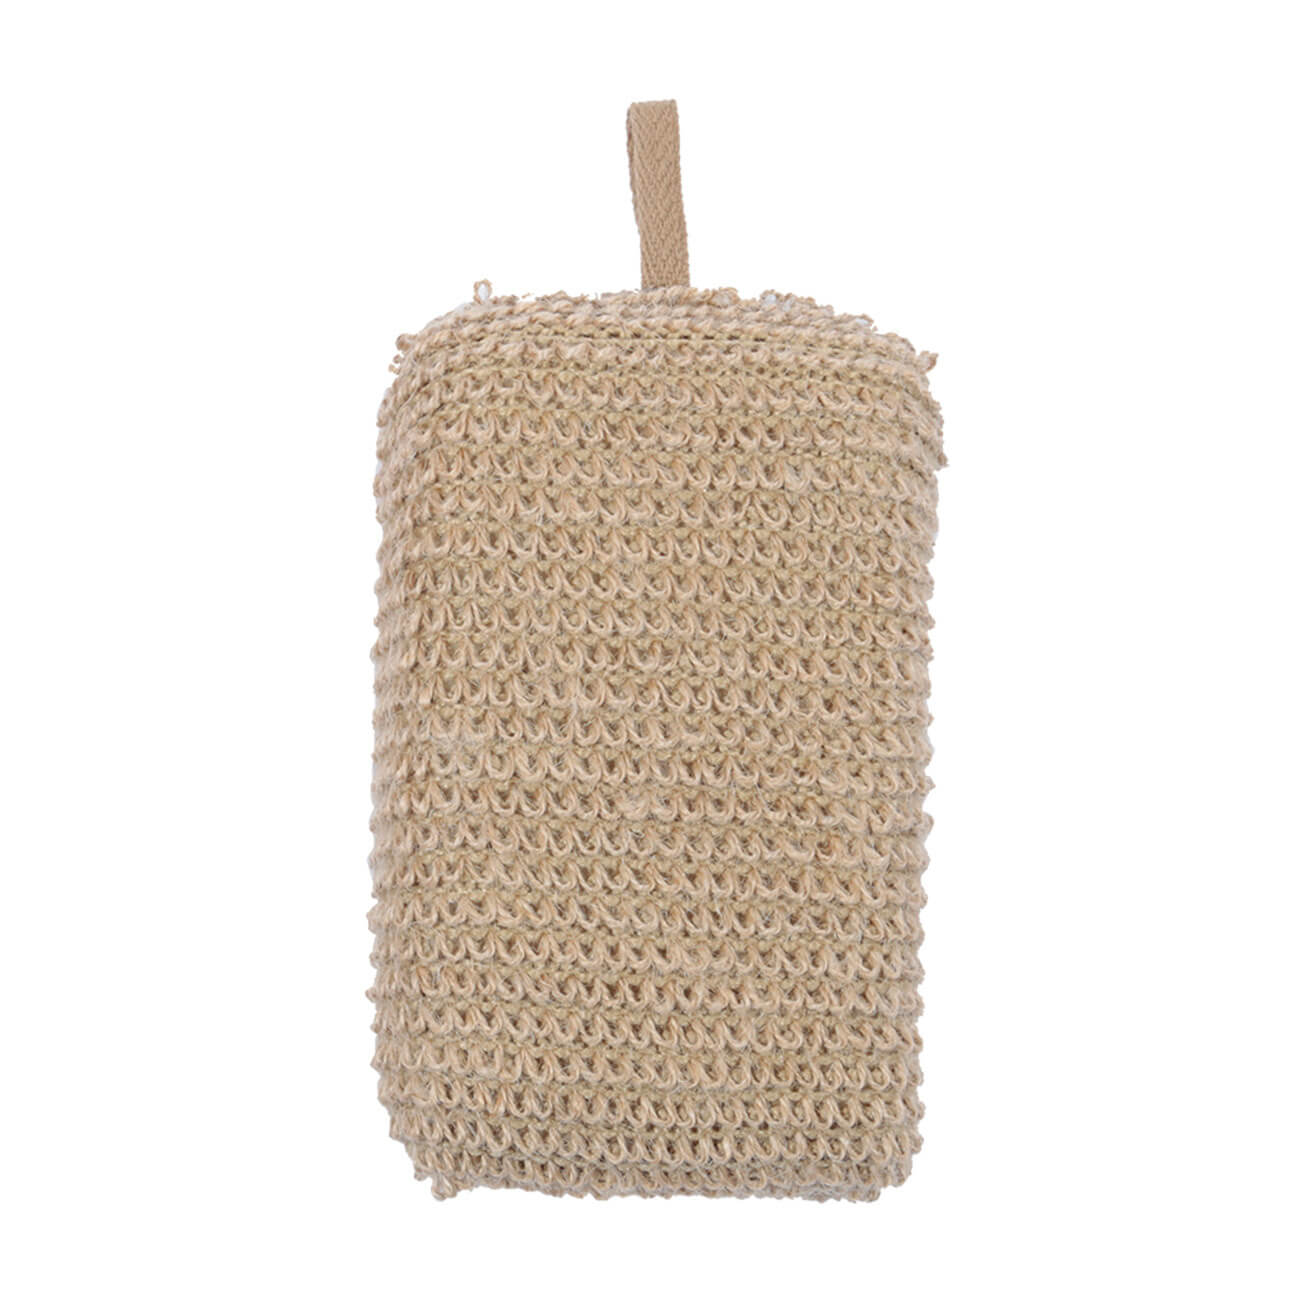 Мочалка-губка для мытья тела, 9х14 см, конопляное волокно/полиуретан, бежевая, Eco life изображение № 1